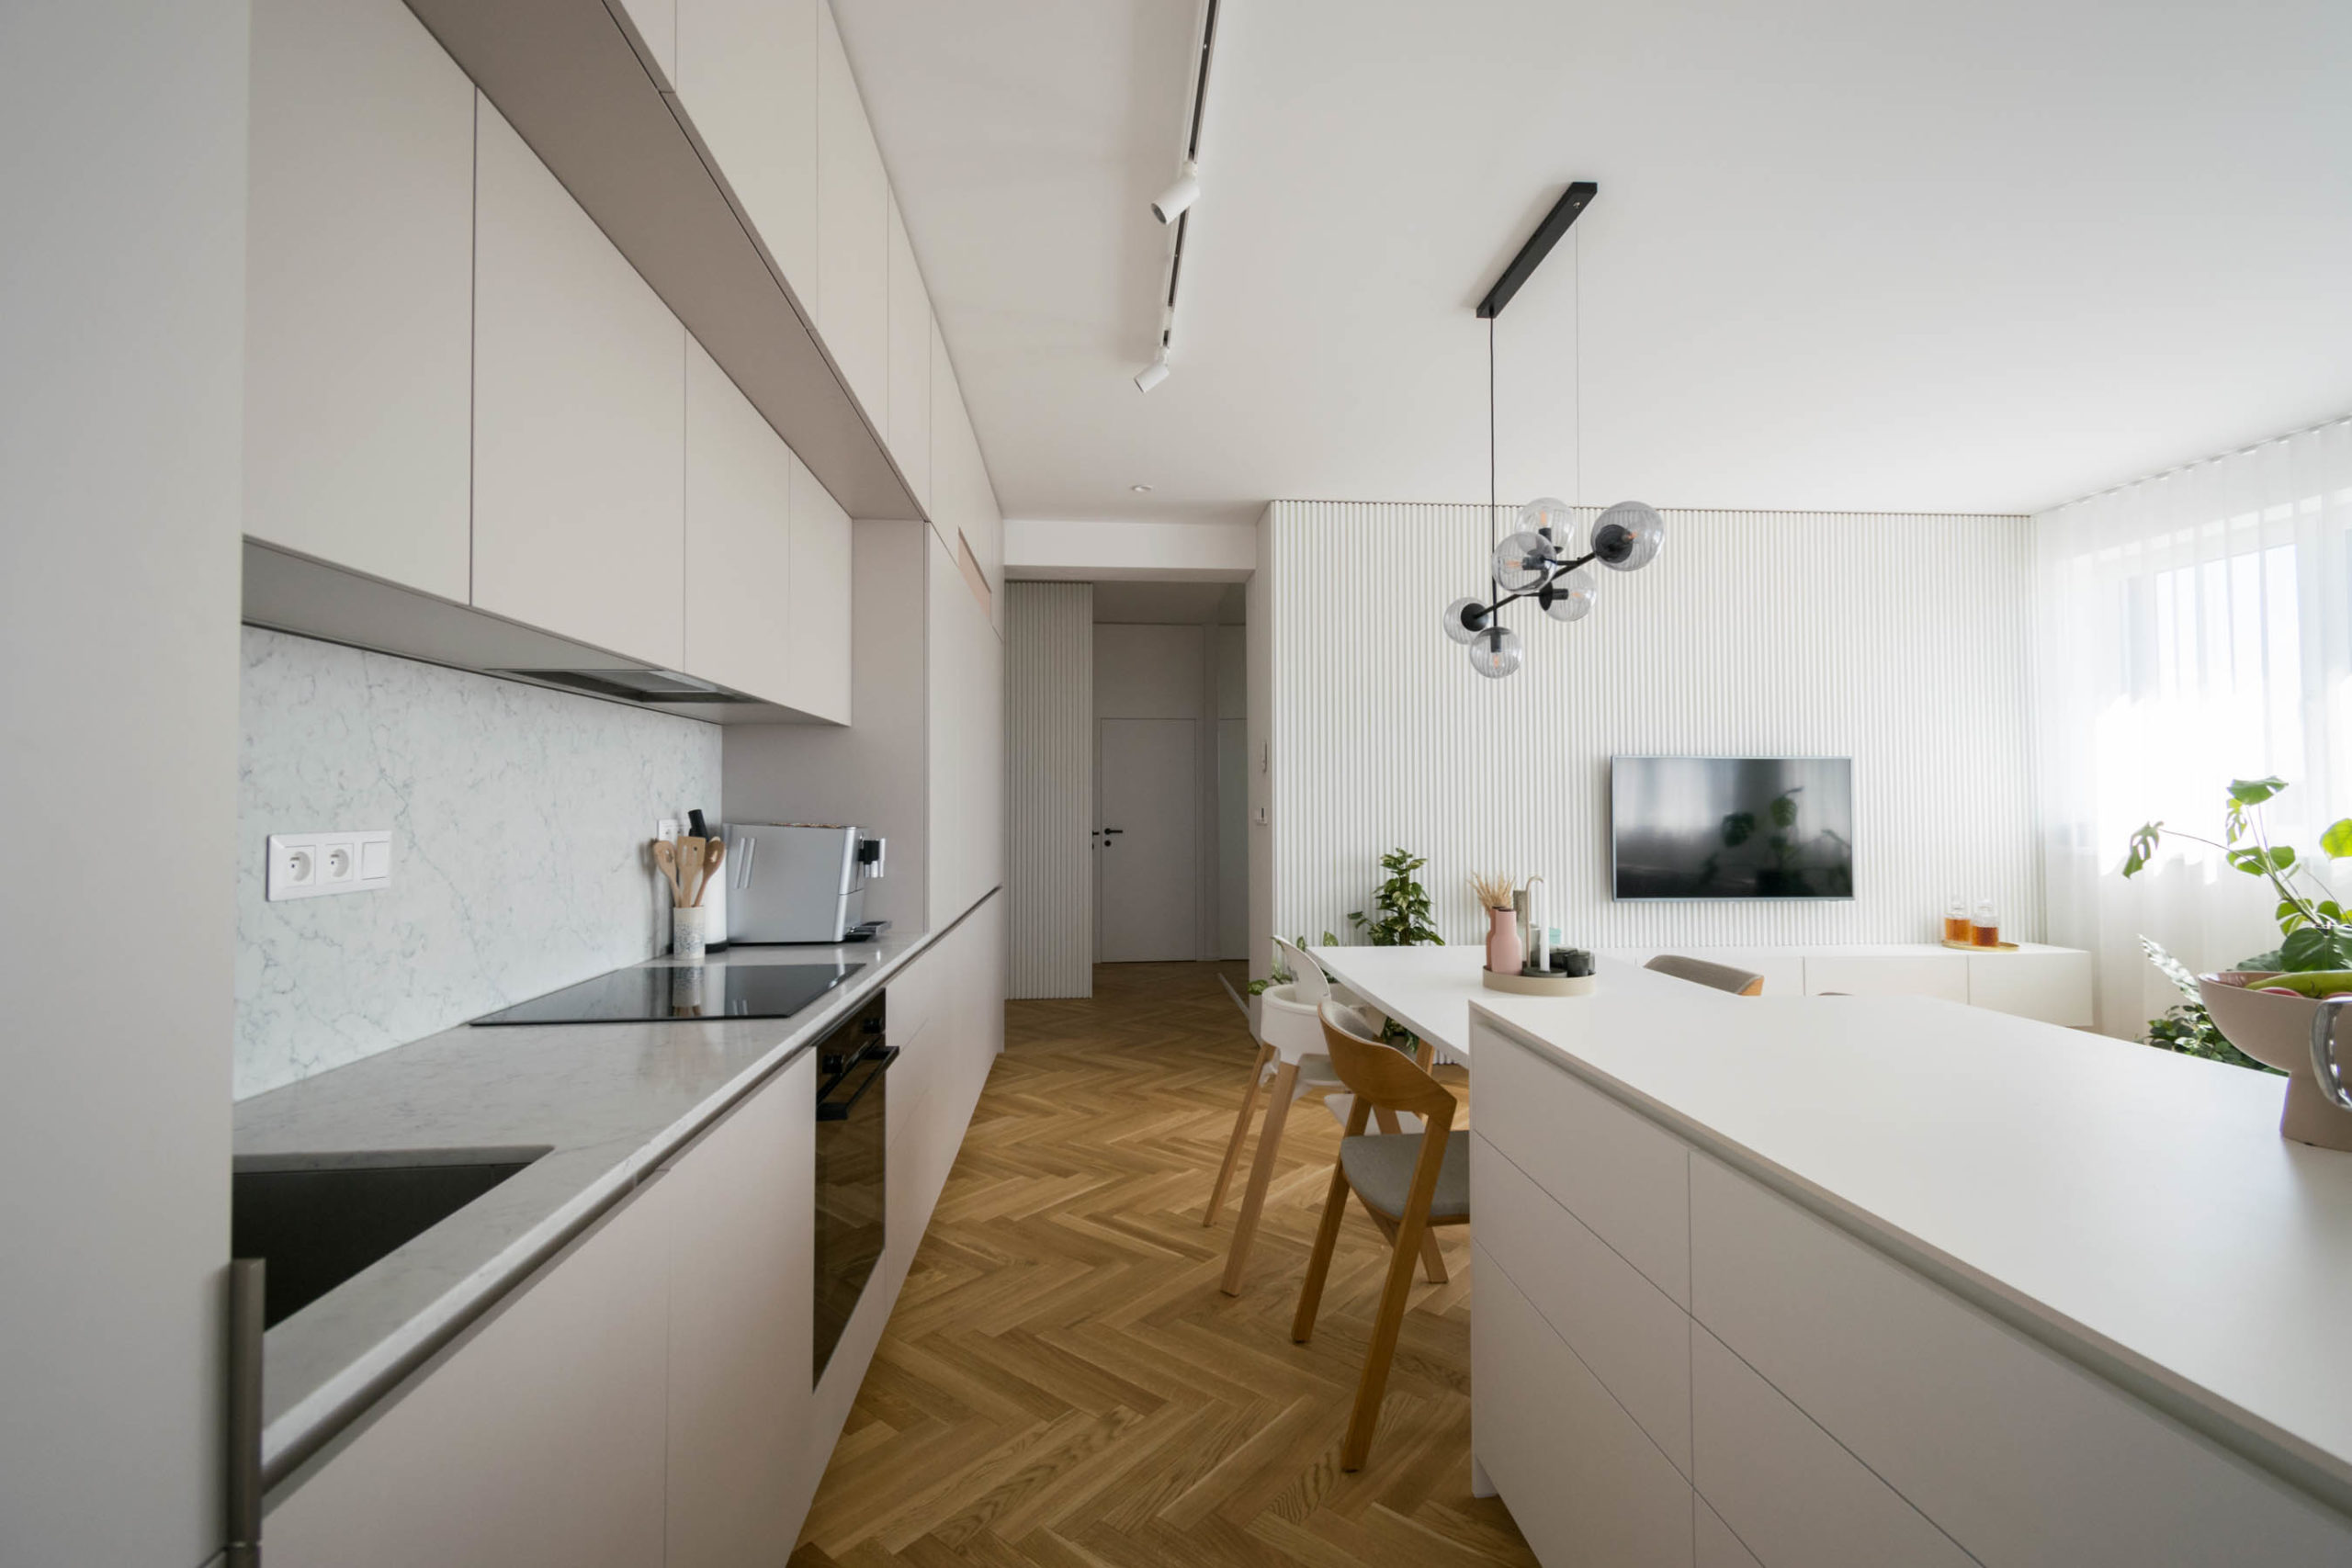 interier 3-izboveho bytu, kuchyna s ostrovom, dizajnove svietidlo, VAUarchitects